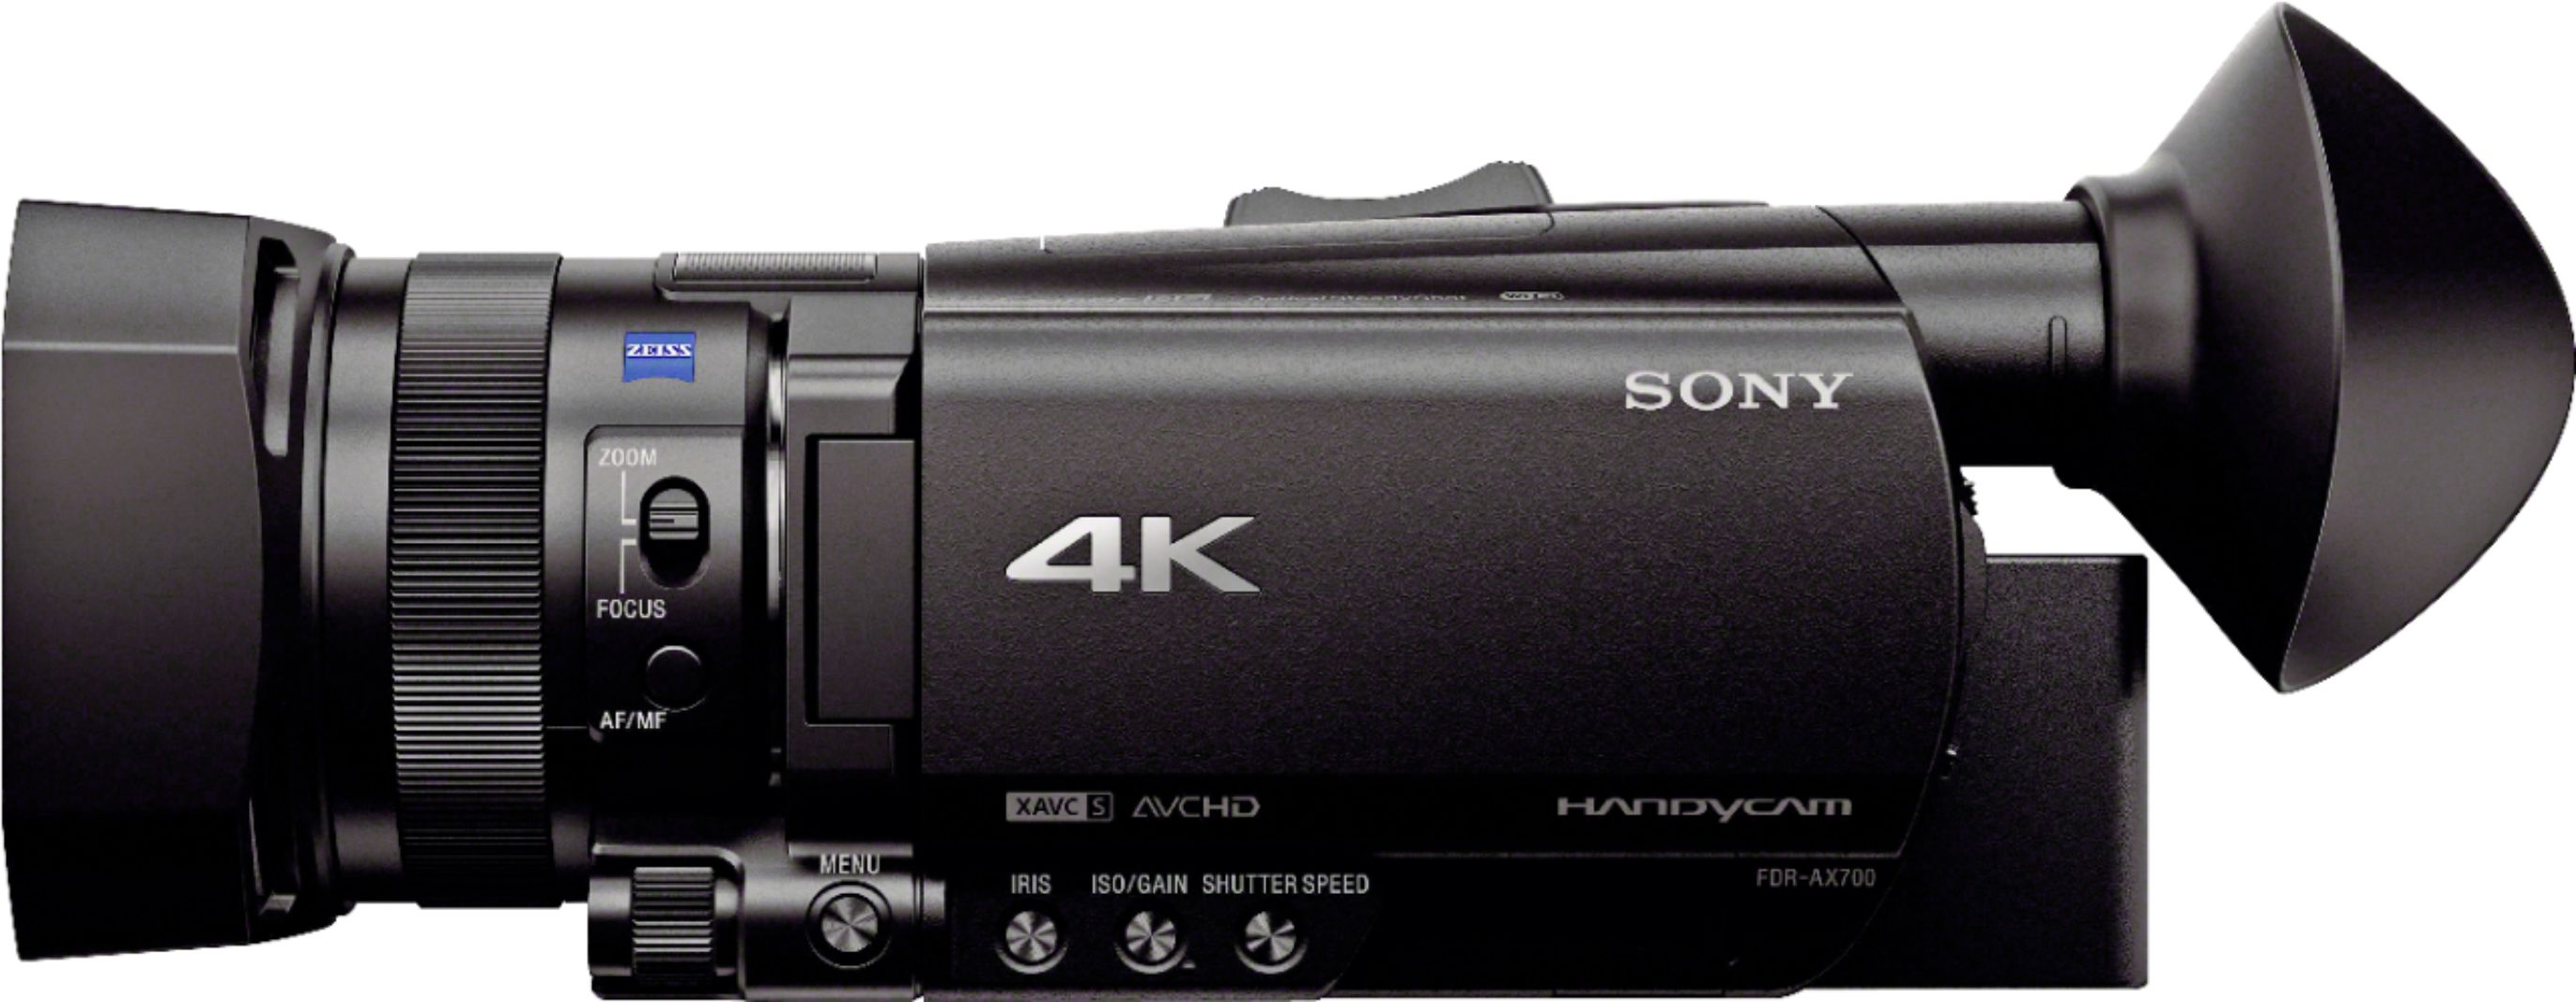 Caméscope 4K HDR avec mise au point automatique hybride rapide, Handycam®  4K FDR-AX700